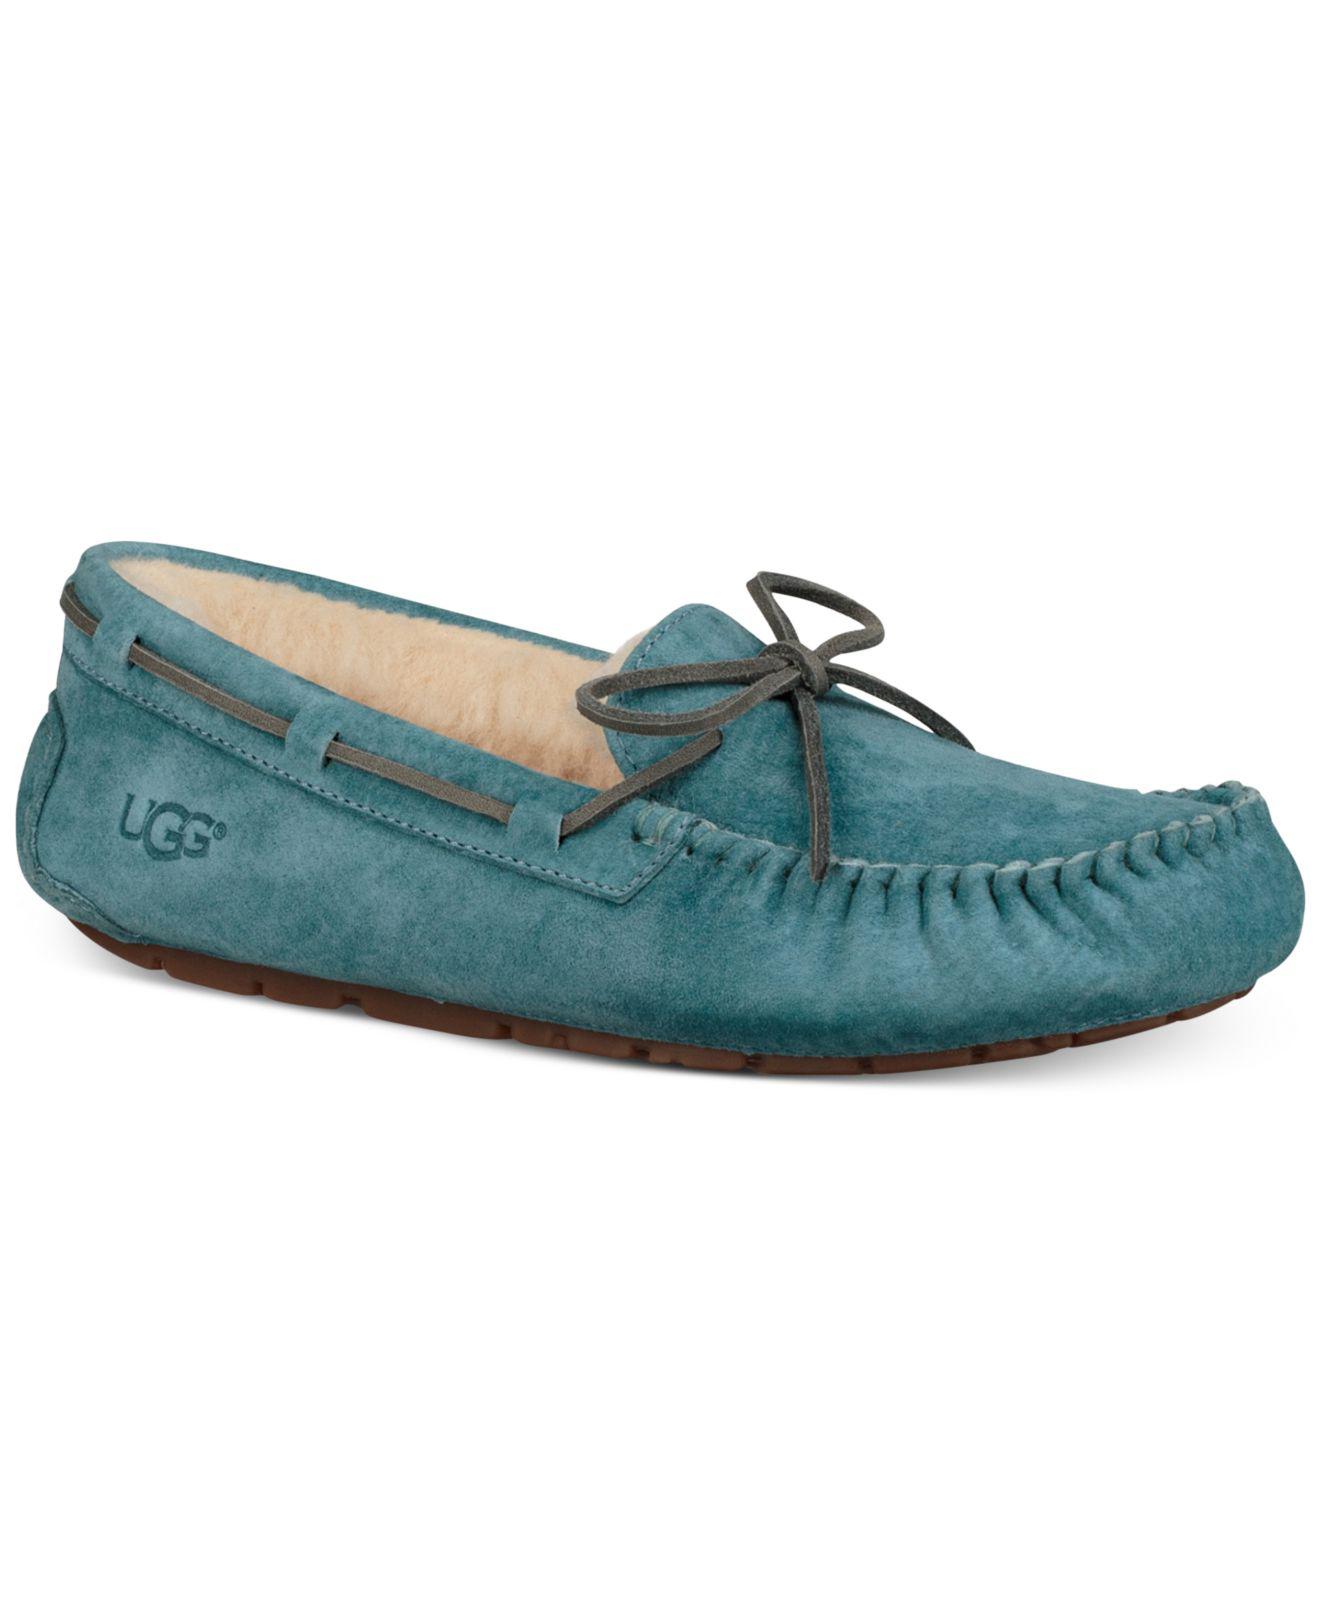 UGG Wool Dakota Moccasin Slippers in Blue - Lyst